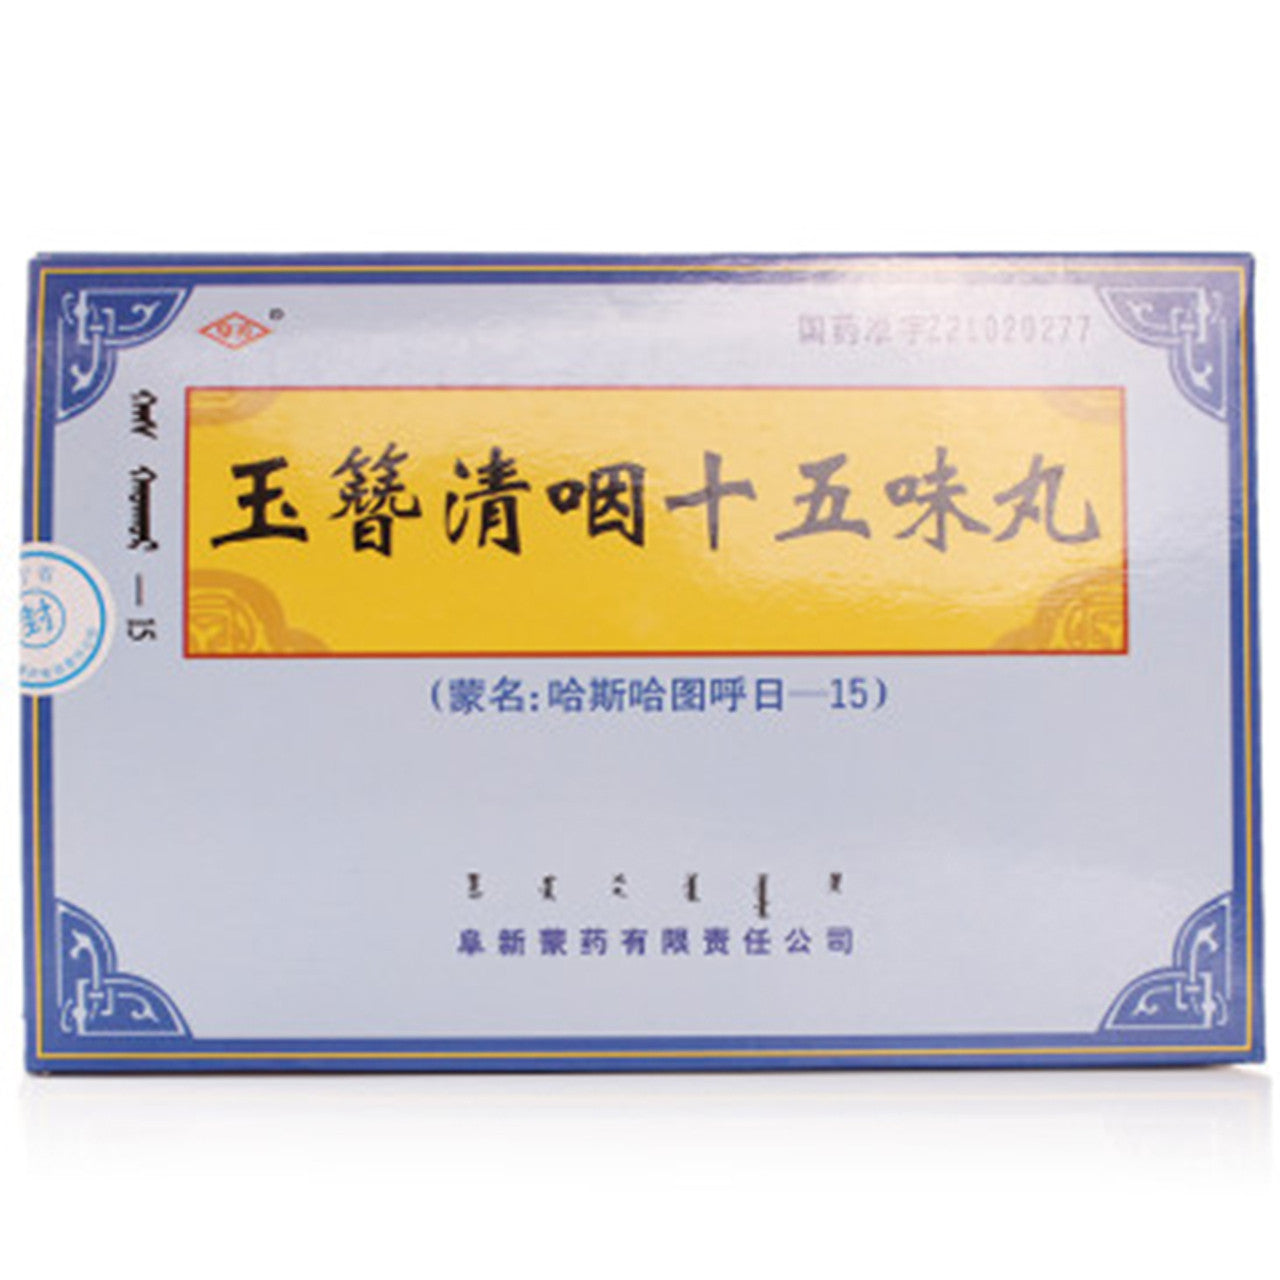 Traditional Chinese Medicine.  Traditional Mongolia Medicine. Yuzan Qingyan Shiwuwei Wan or  Yuzan Qingyan Shiwuwei Pills for Pharyngitis. Yu Zan Qing Yan Shi Wu Wei Wan.  12.5g*3 Pills*5 boxes